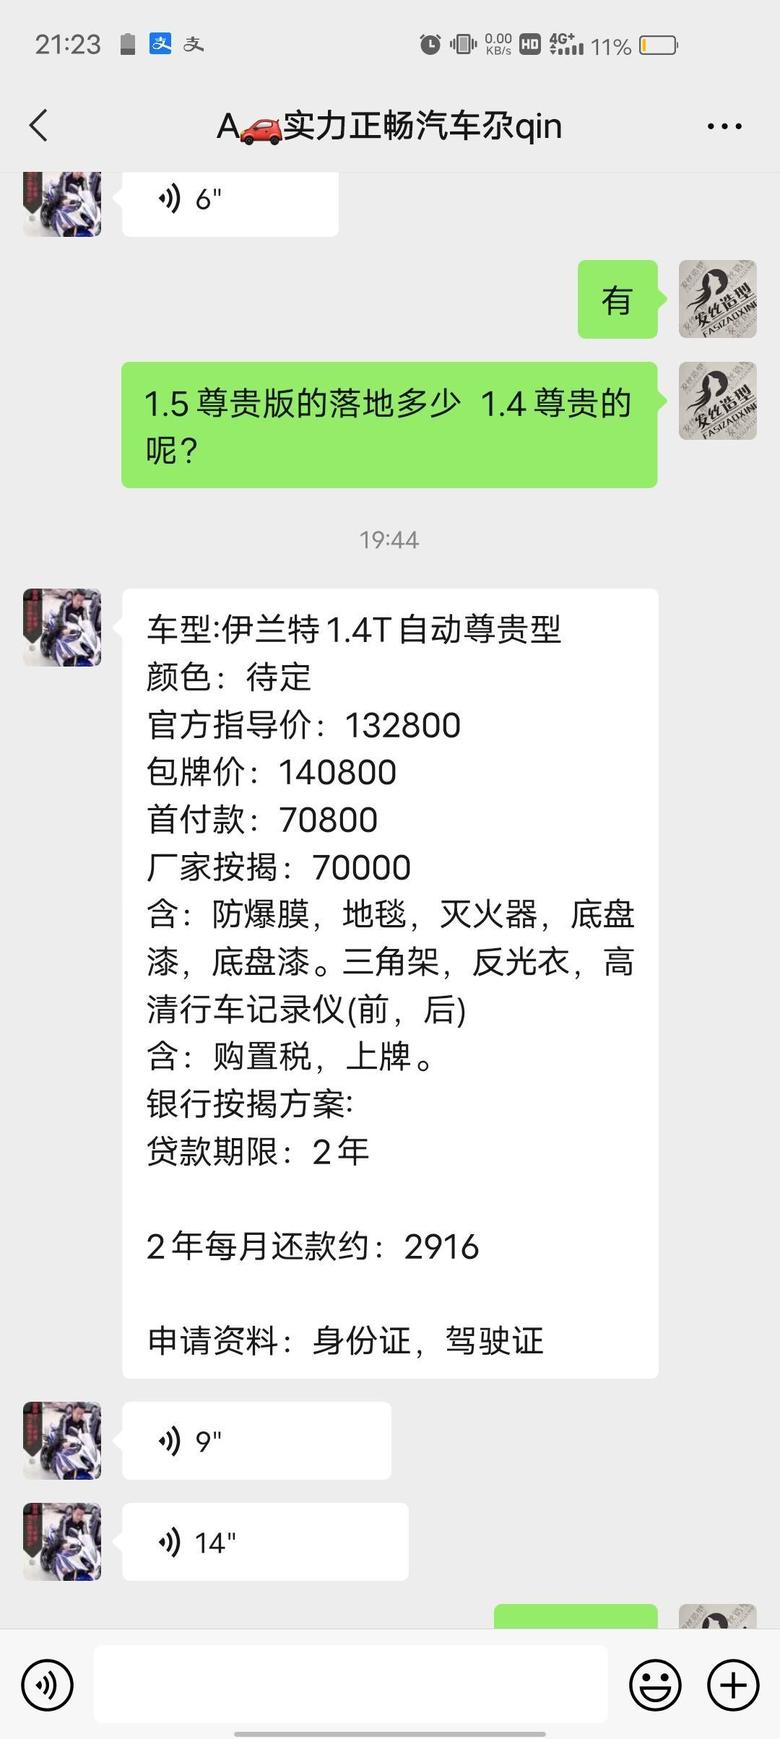 伊兰特 各位，广东江门1.4T尊贵版落地14.0800贵么？各位给点意见。